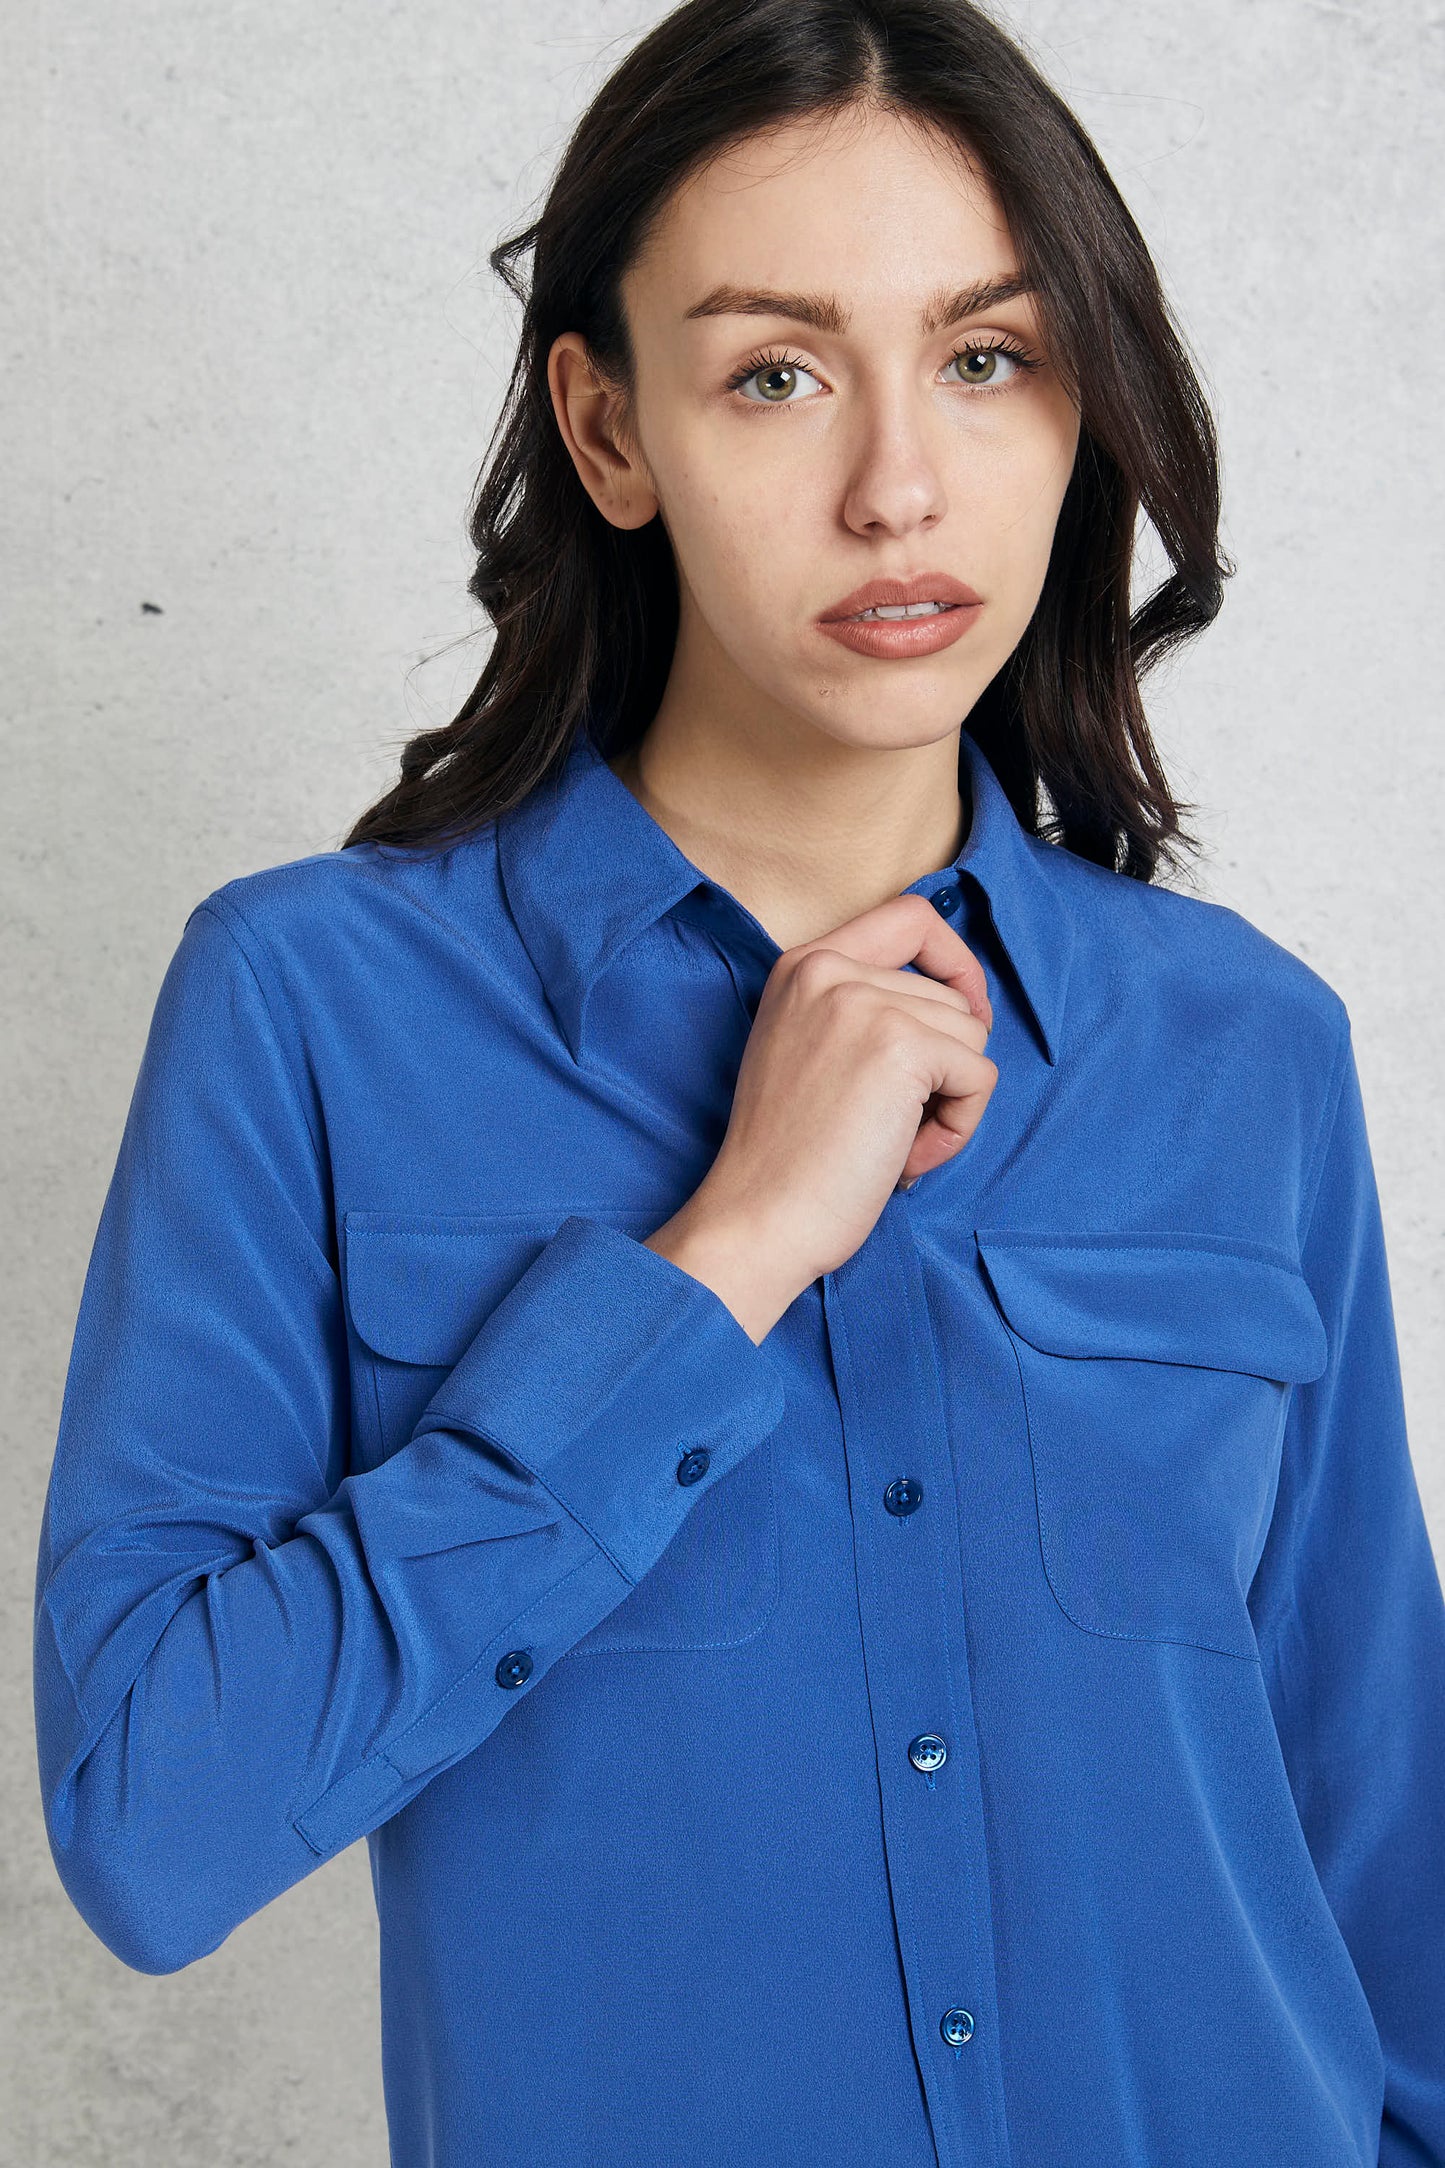  Equipment Femme Blue Silk Shirt For Women Blu Donna - 7